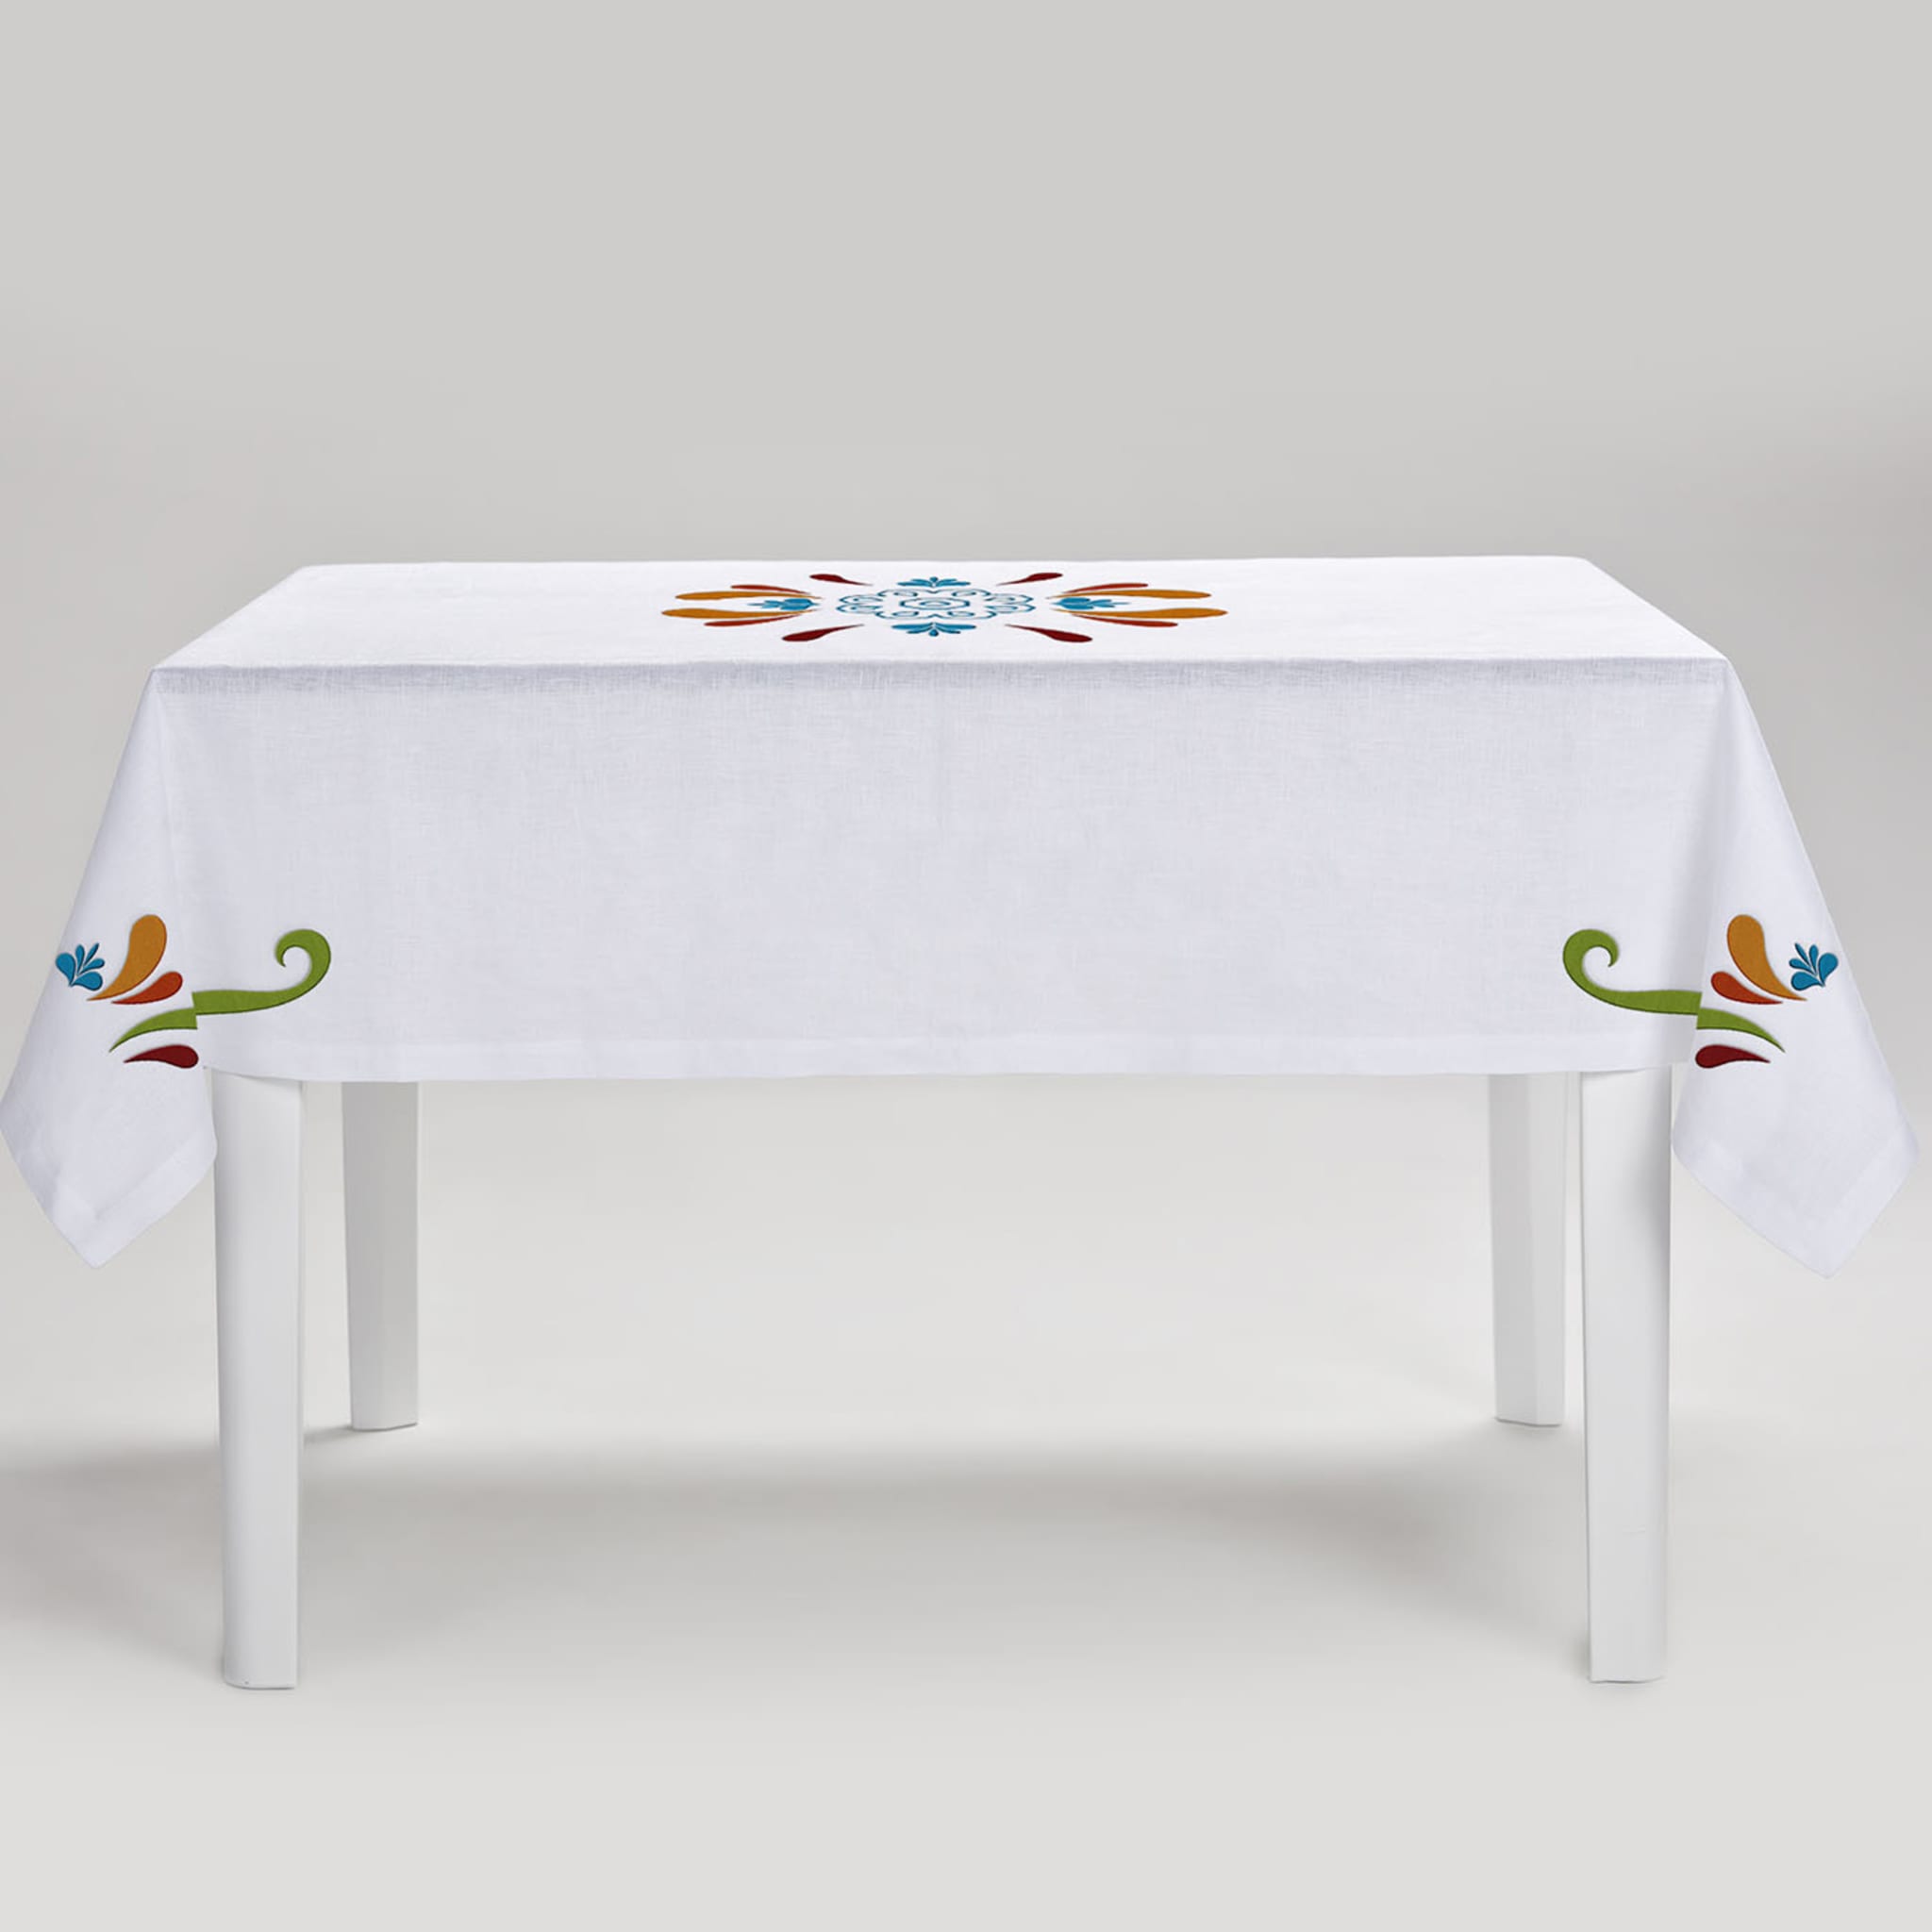 Maiolica Rectangular Polychrome Tablecloth - Alternative view 1